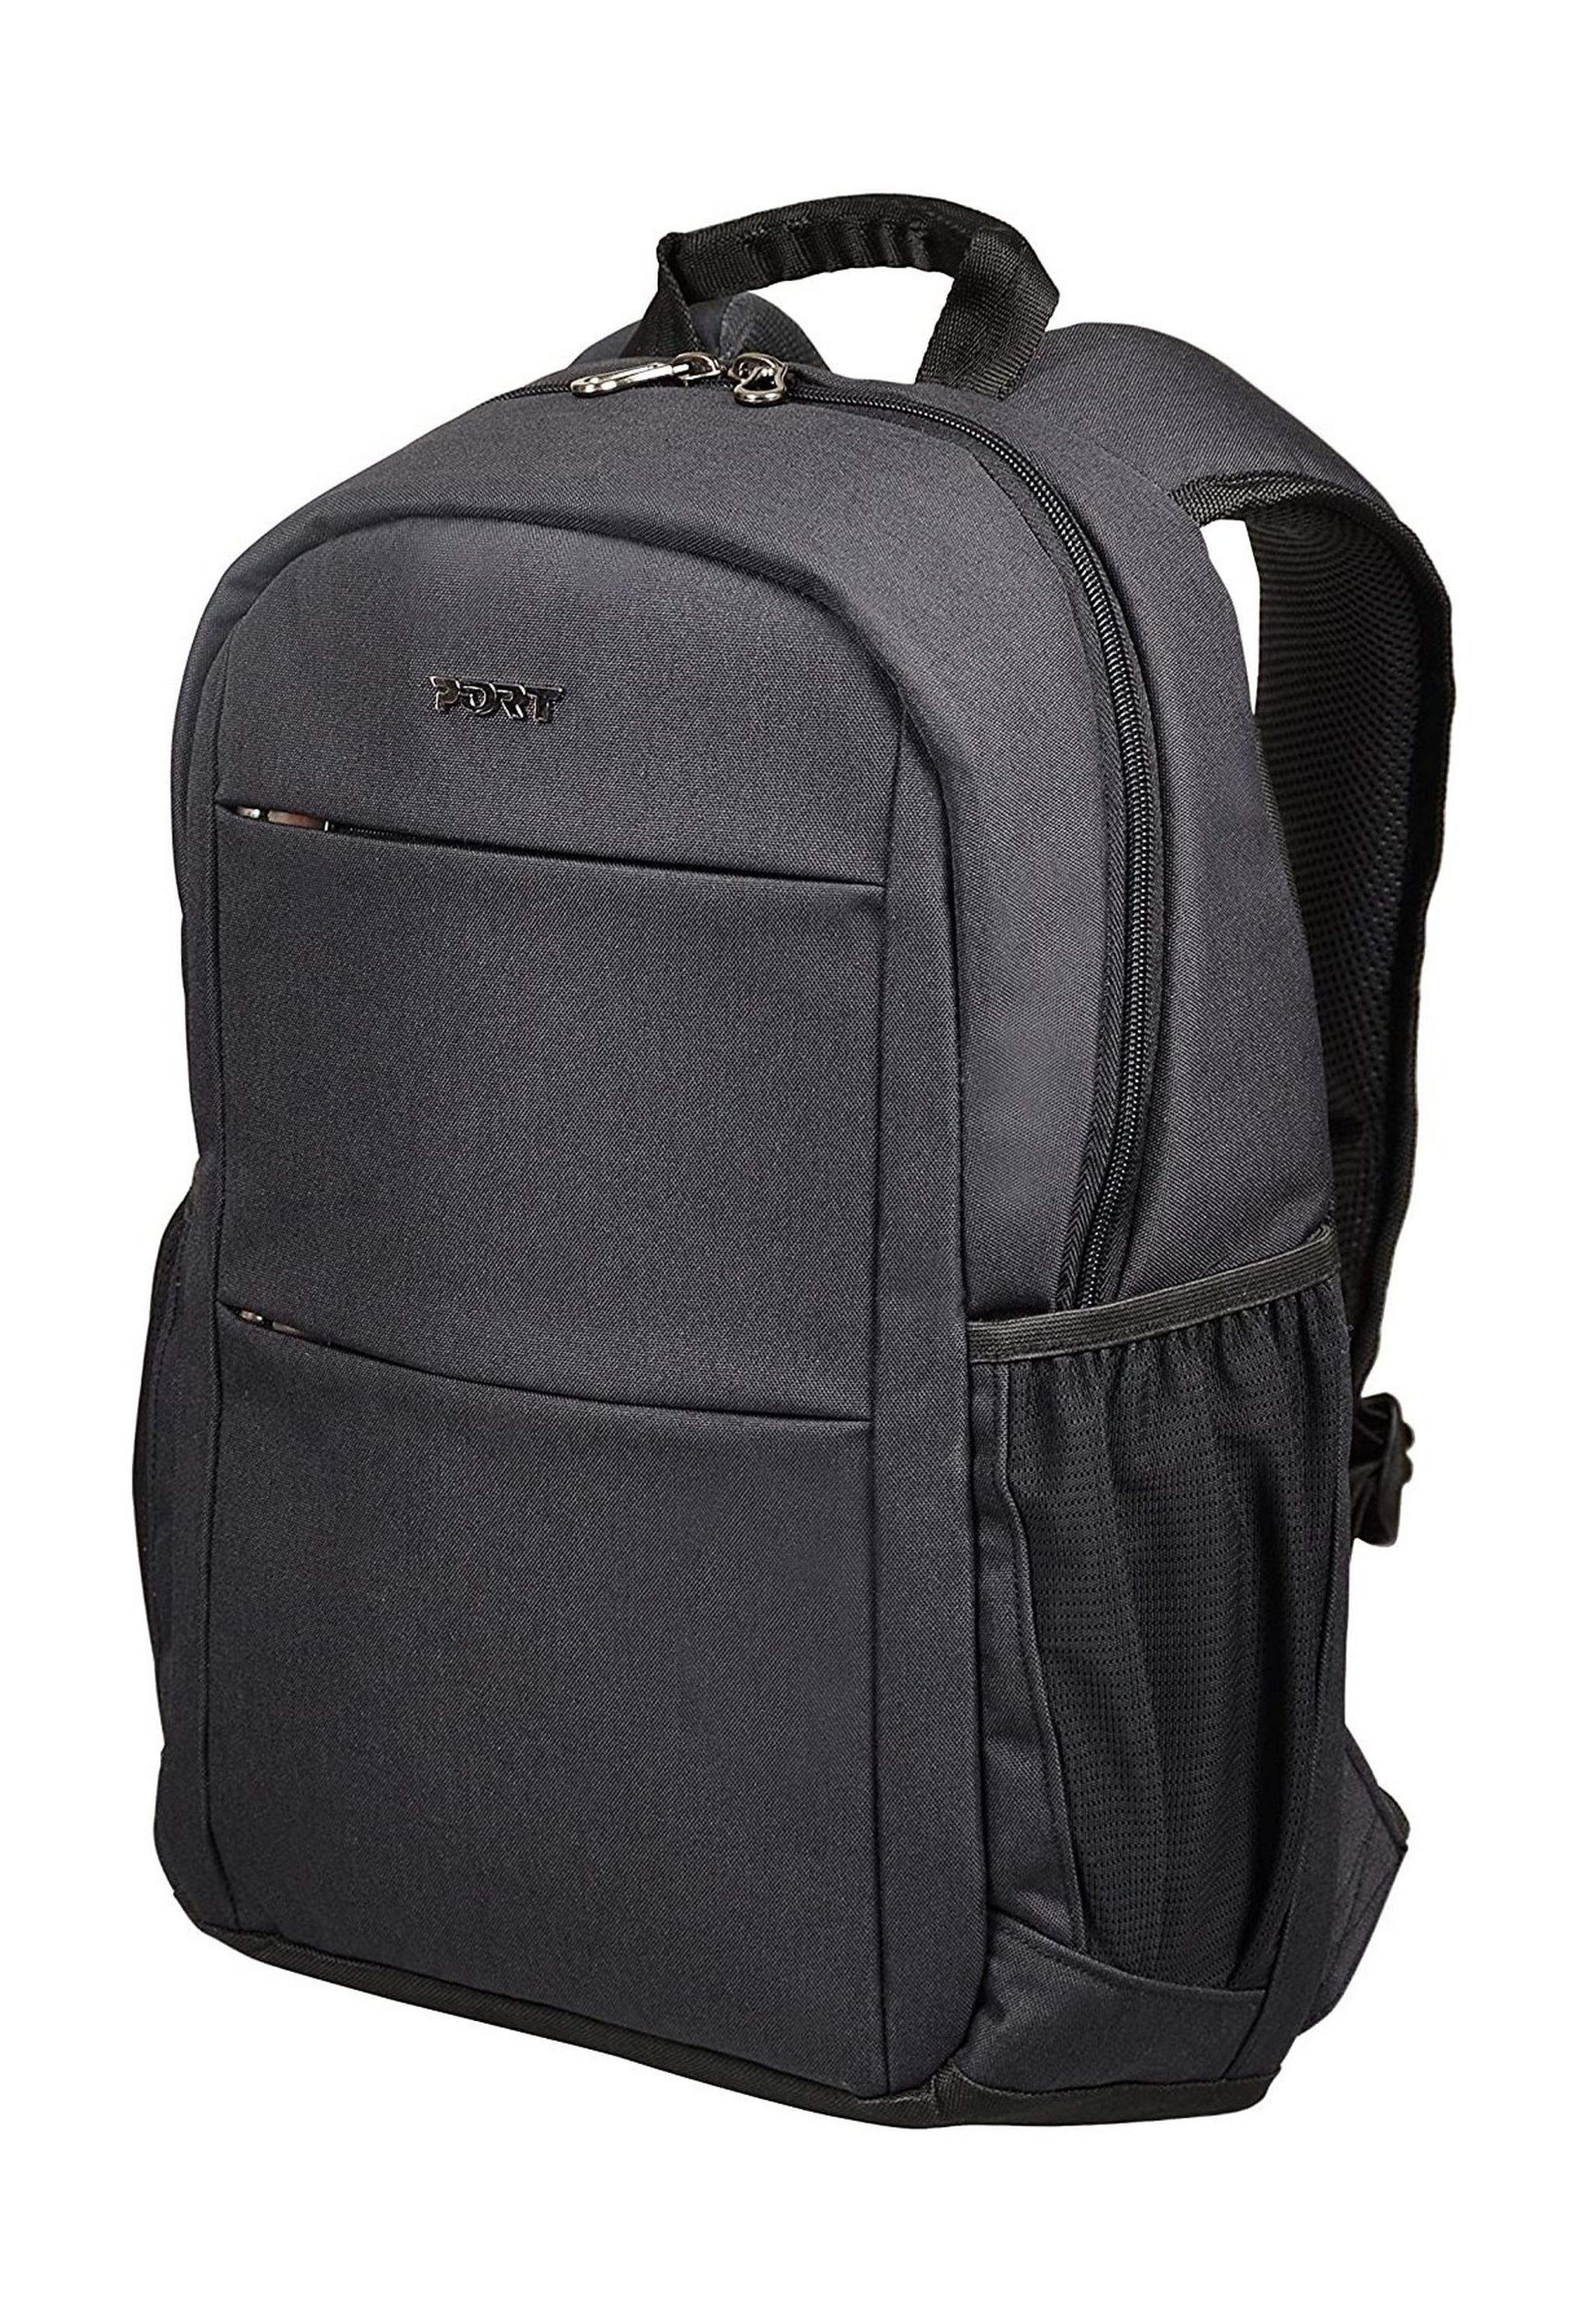 Port Designs Sydney 15.6-Inch Backpack - Black